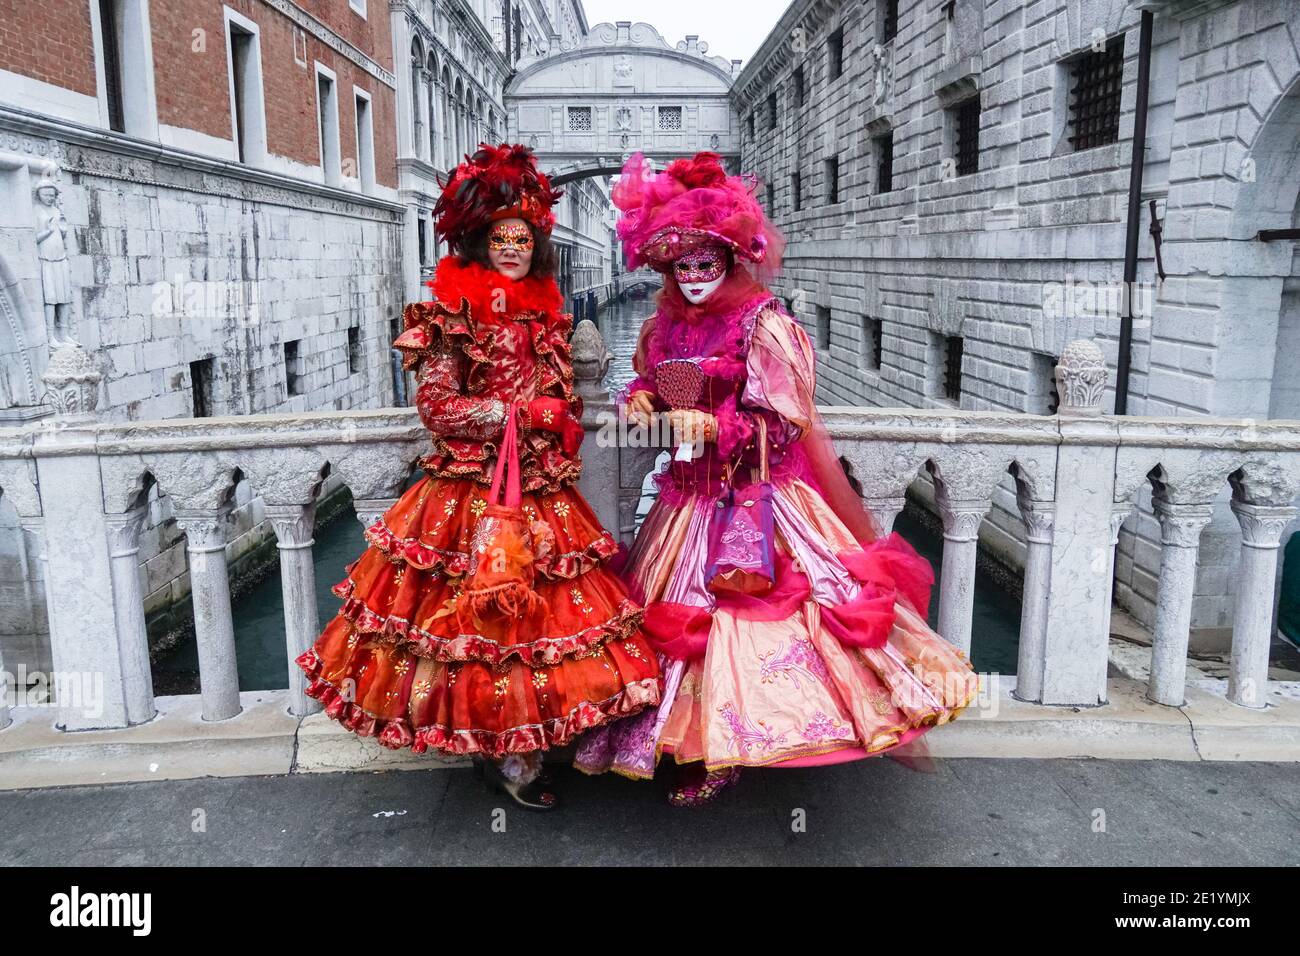 Deux femmes vêtues de costumes traditionnels décorés et de masques peints pendant le Carnaval de Venise avec le pont des Soupirs derrière, Venise, Italie Banque D'Images